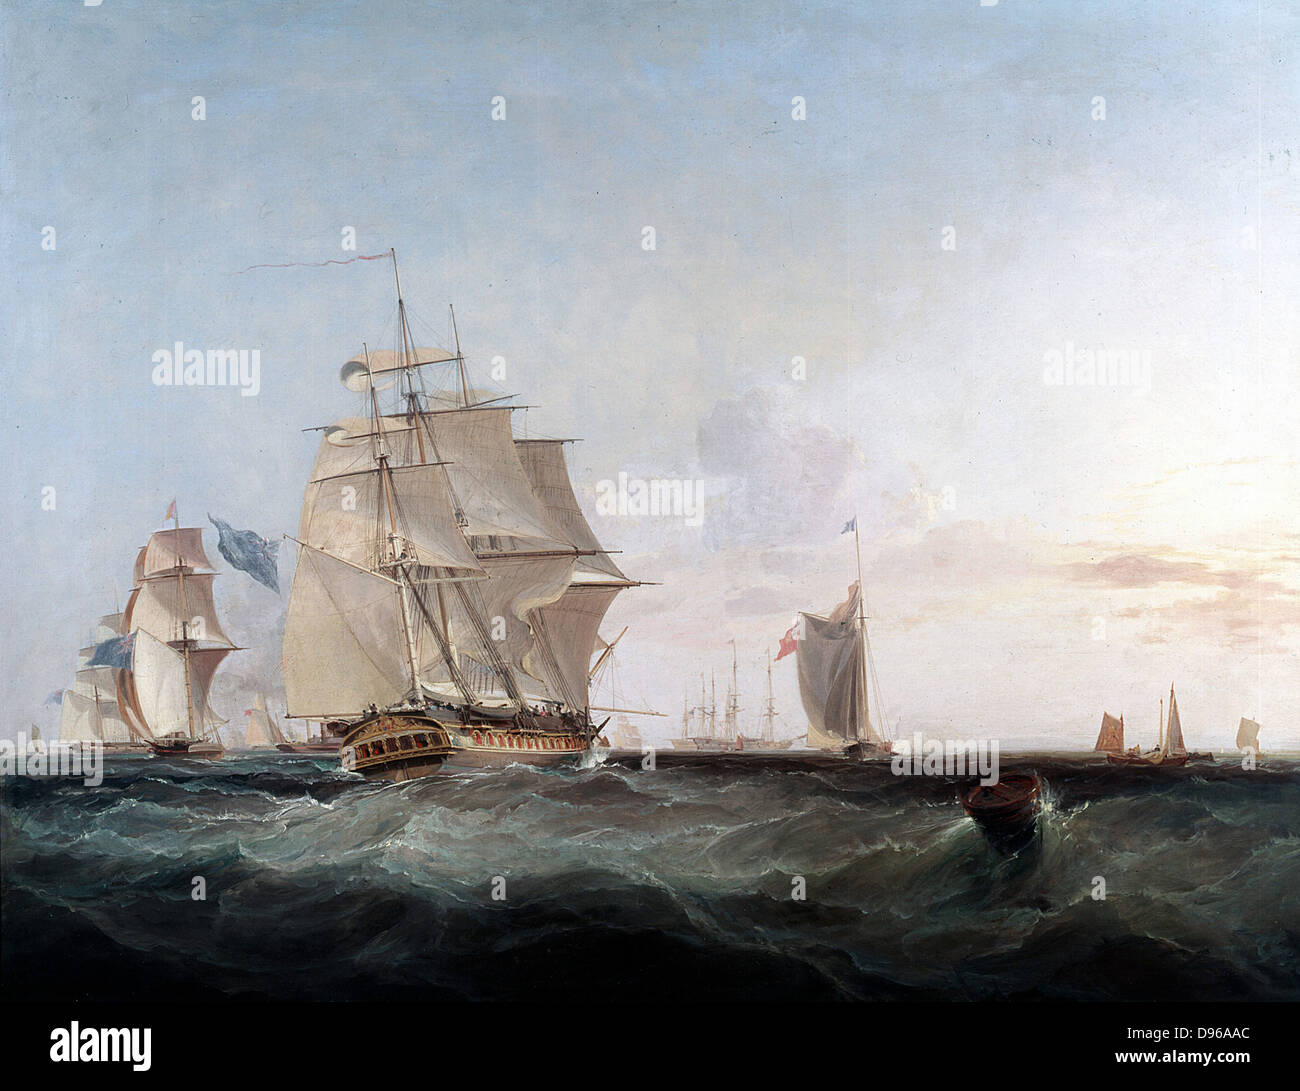 Navires marchands et autres voyage dans la Manche" Huile sur toile réalisée par le peintre britannique George Chambers (1803-1840) Banque D'Images